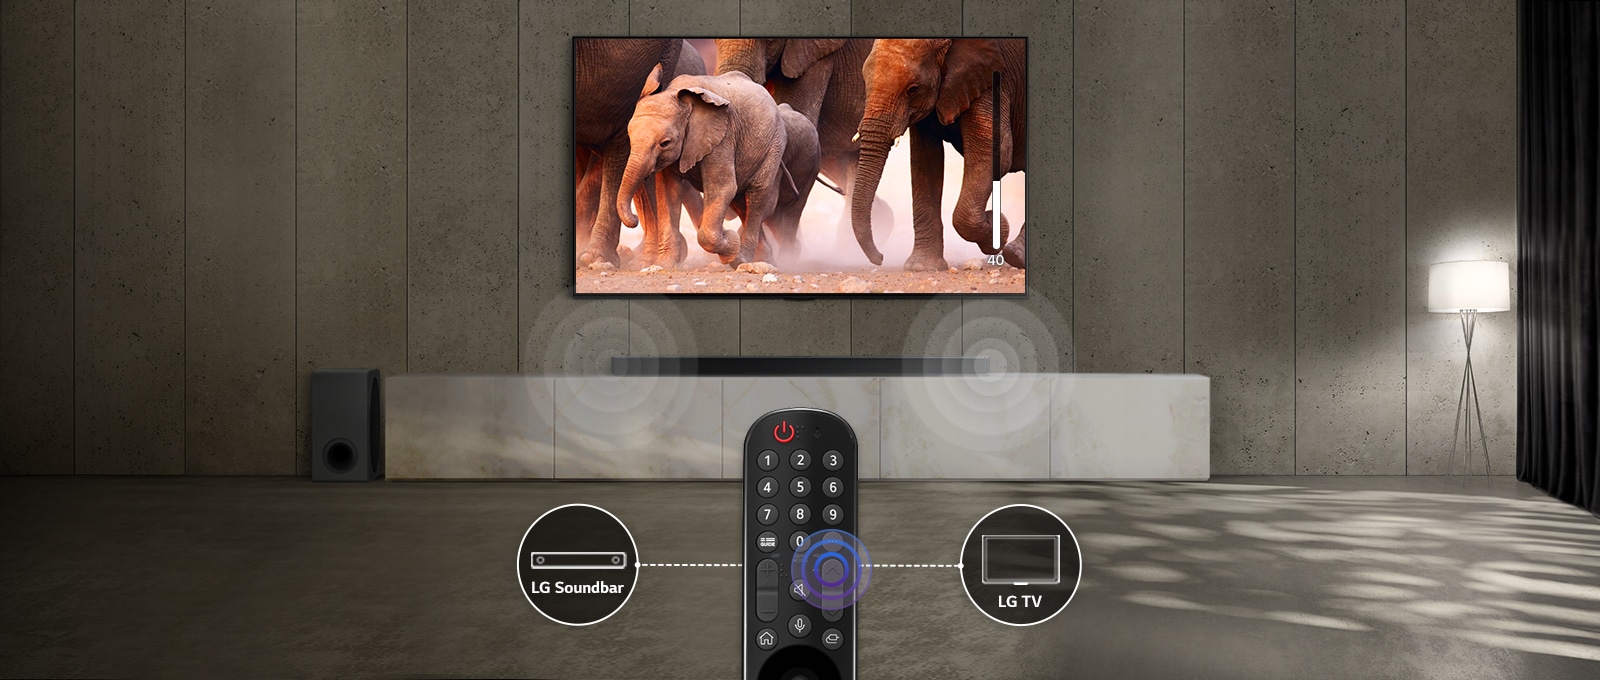 Le téléviseur installé dans une pièce aux lumières subtiles diffuse des images d’éléphants qui marchent. Un effet sonore est visible sur la barre de son sous le téléviseur. Au bas de l’image, on peut voir une télécommande du téléviseur, et la barre de son et l’icône du téléviseur sont connectées à gauche et à droite de la télécommande.